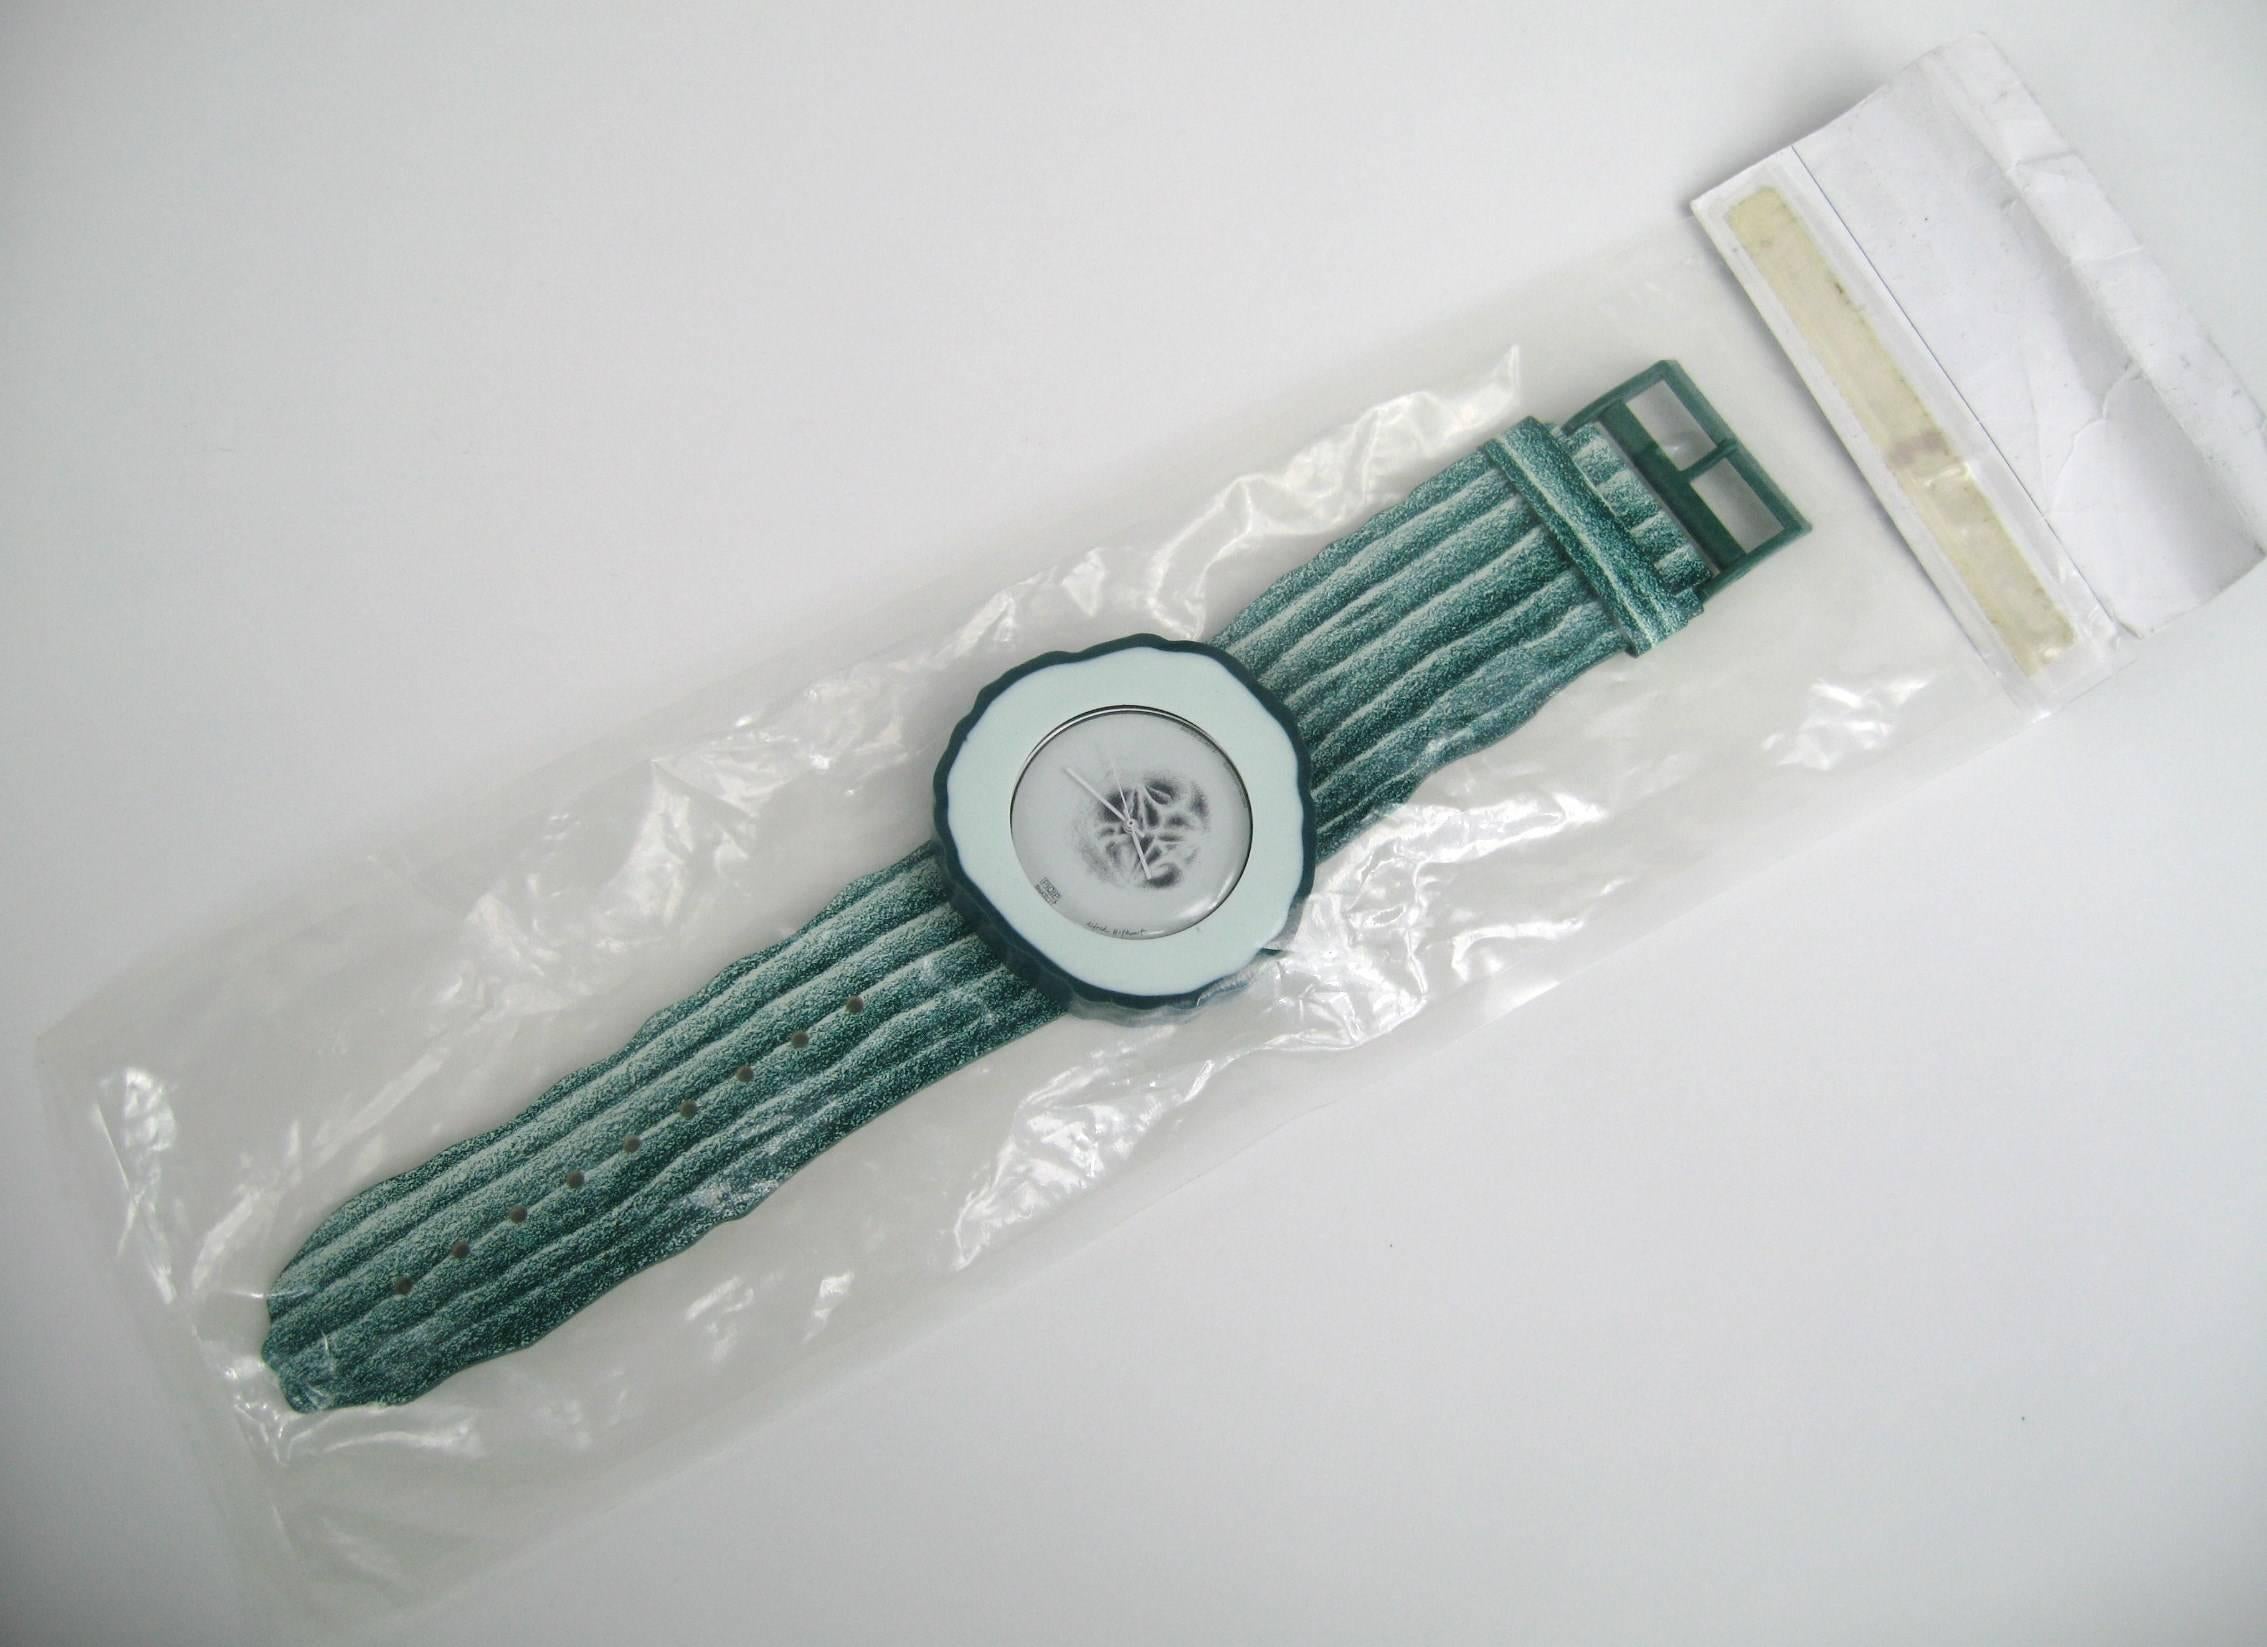 1991 Guhrke Artist Series Swatch Uhr #334/9999. Nie getragen oder aus der Verpackung genommen. Gu(h)rke (PWZ100) ist ein kühles Grün, bis hin zum Zifferblatt, das wie eine feuchte, entkernte Gurkenscheibe eingefärbt ist. Die Uhr befindet sich noch